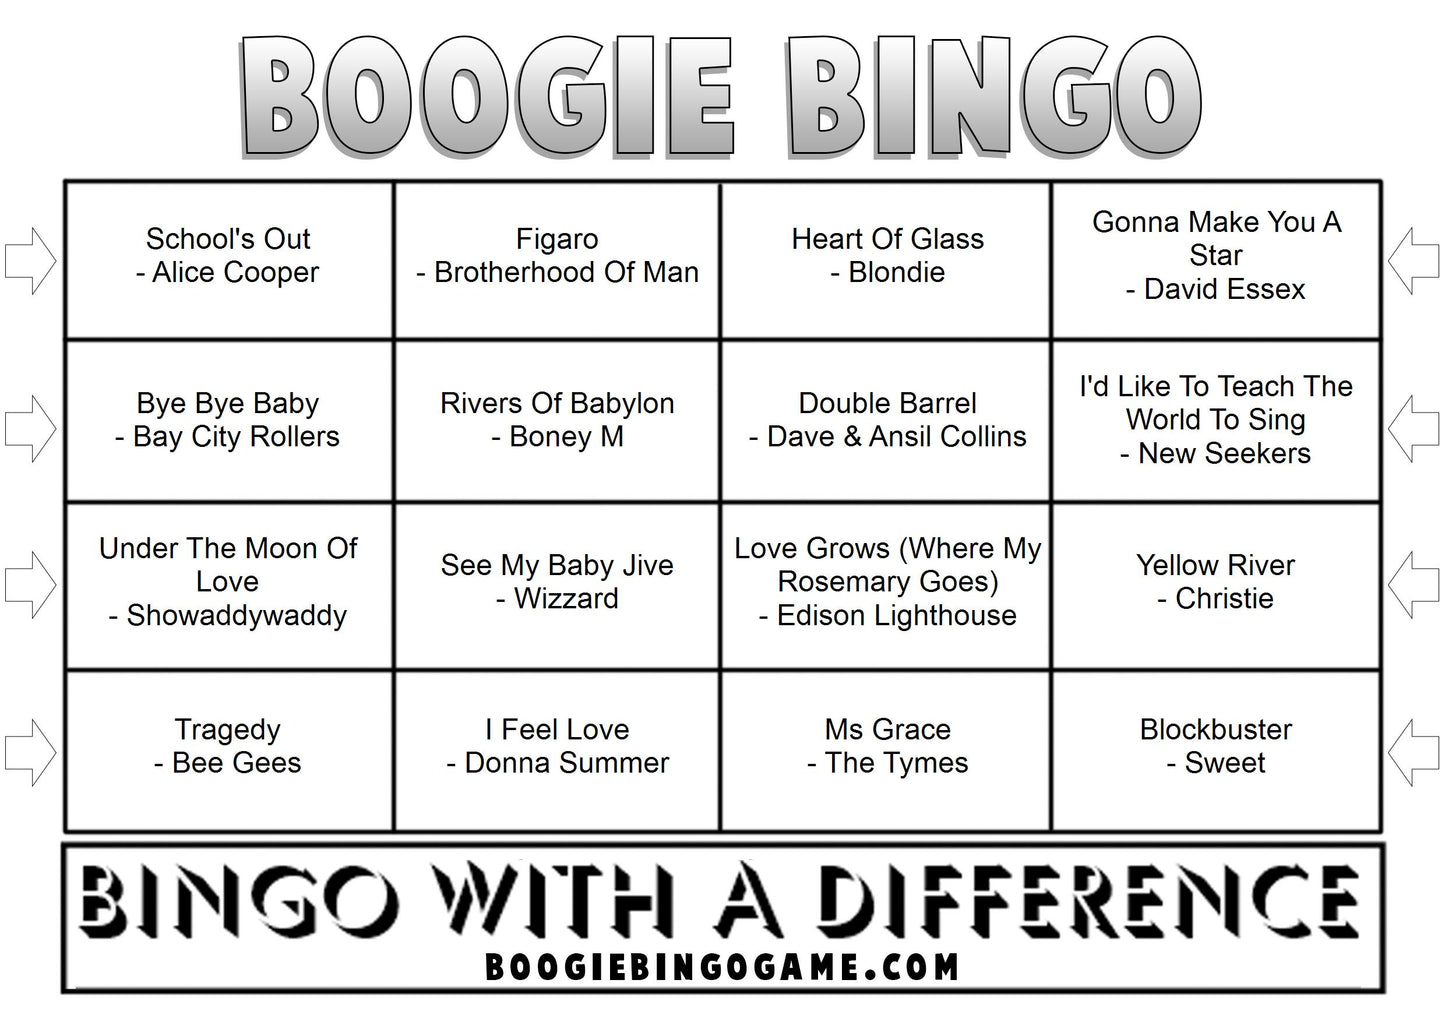 Game 36 | 70s Number Ones | Boogie Bingo | Printed Music Bingo Tickets